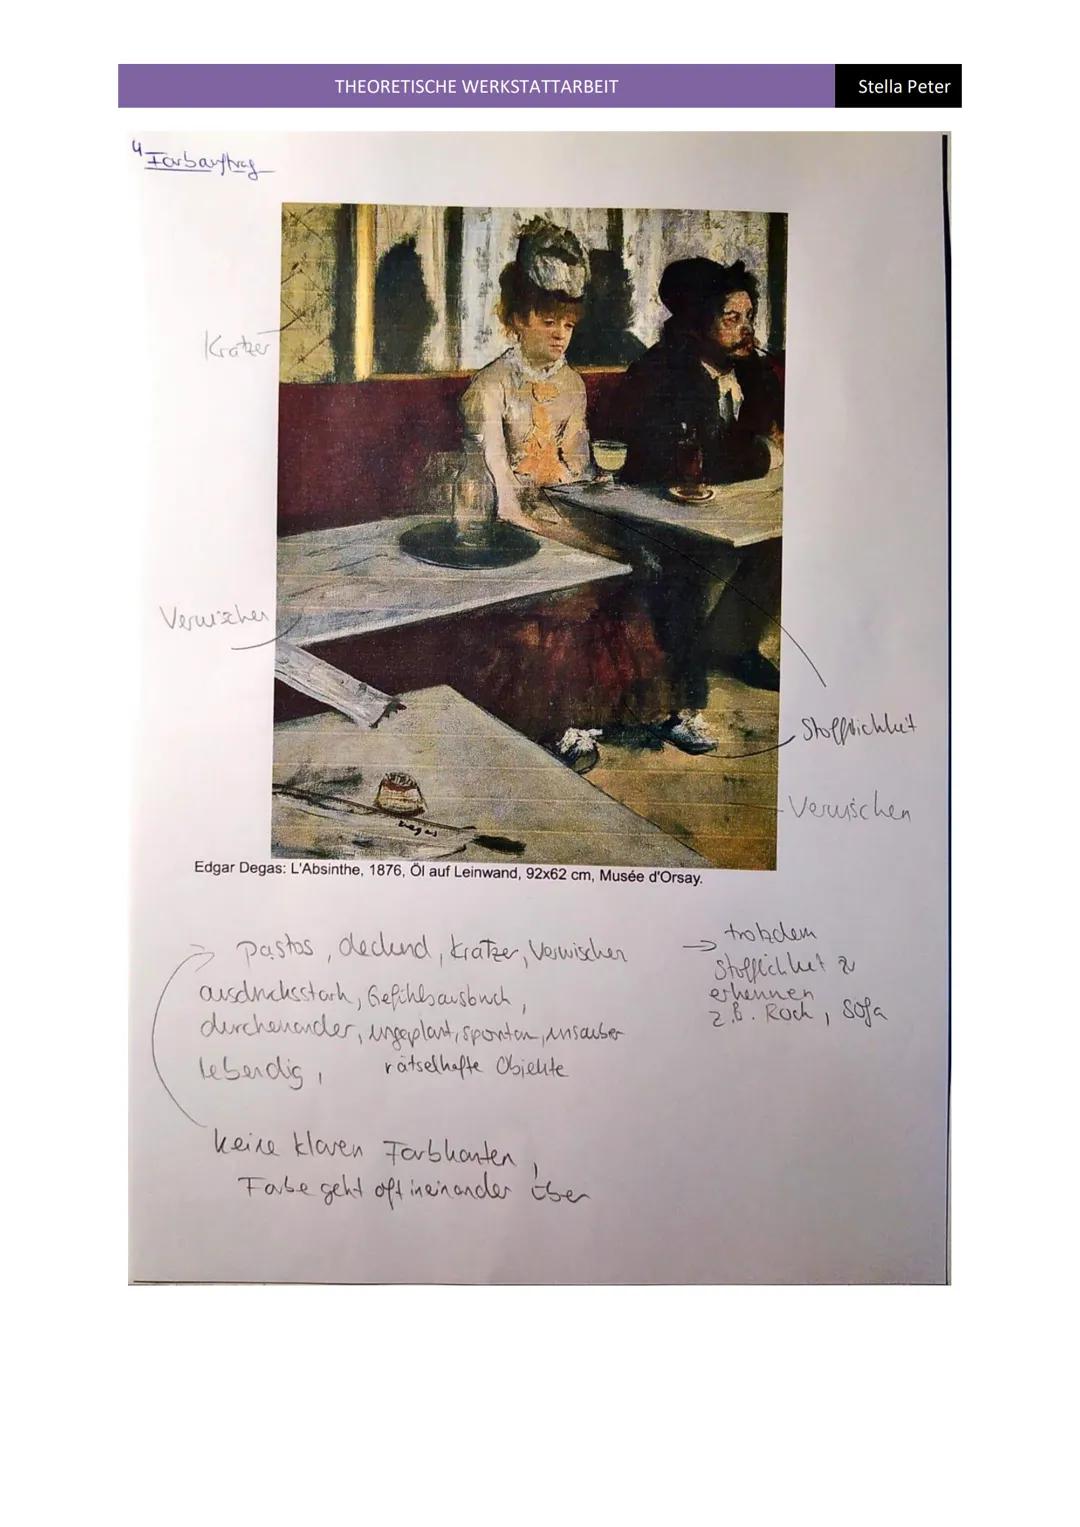 THEORETISCHE WERKSTATTARBEIT
Stella Peter
Das Gemälde ,,L'Absinthe" wurde von Edgar Degas mit Öl auf Leinwand gemalt und stammt aus dem
Jahr